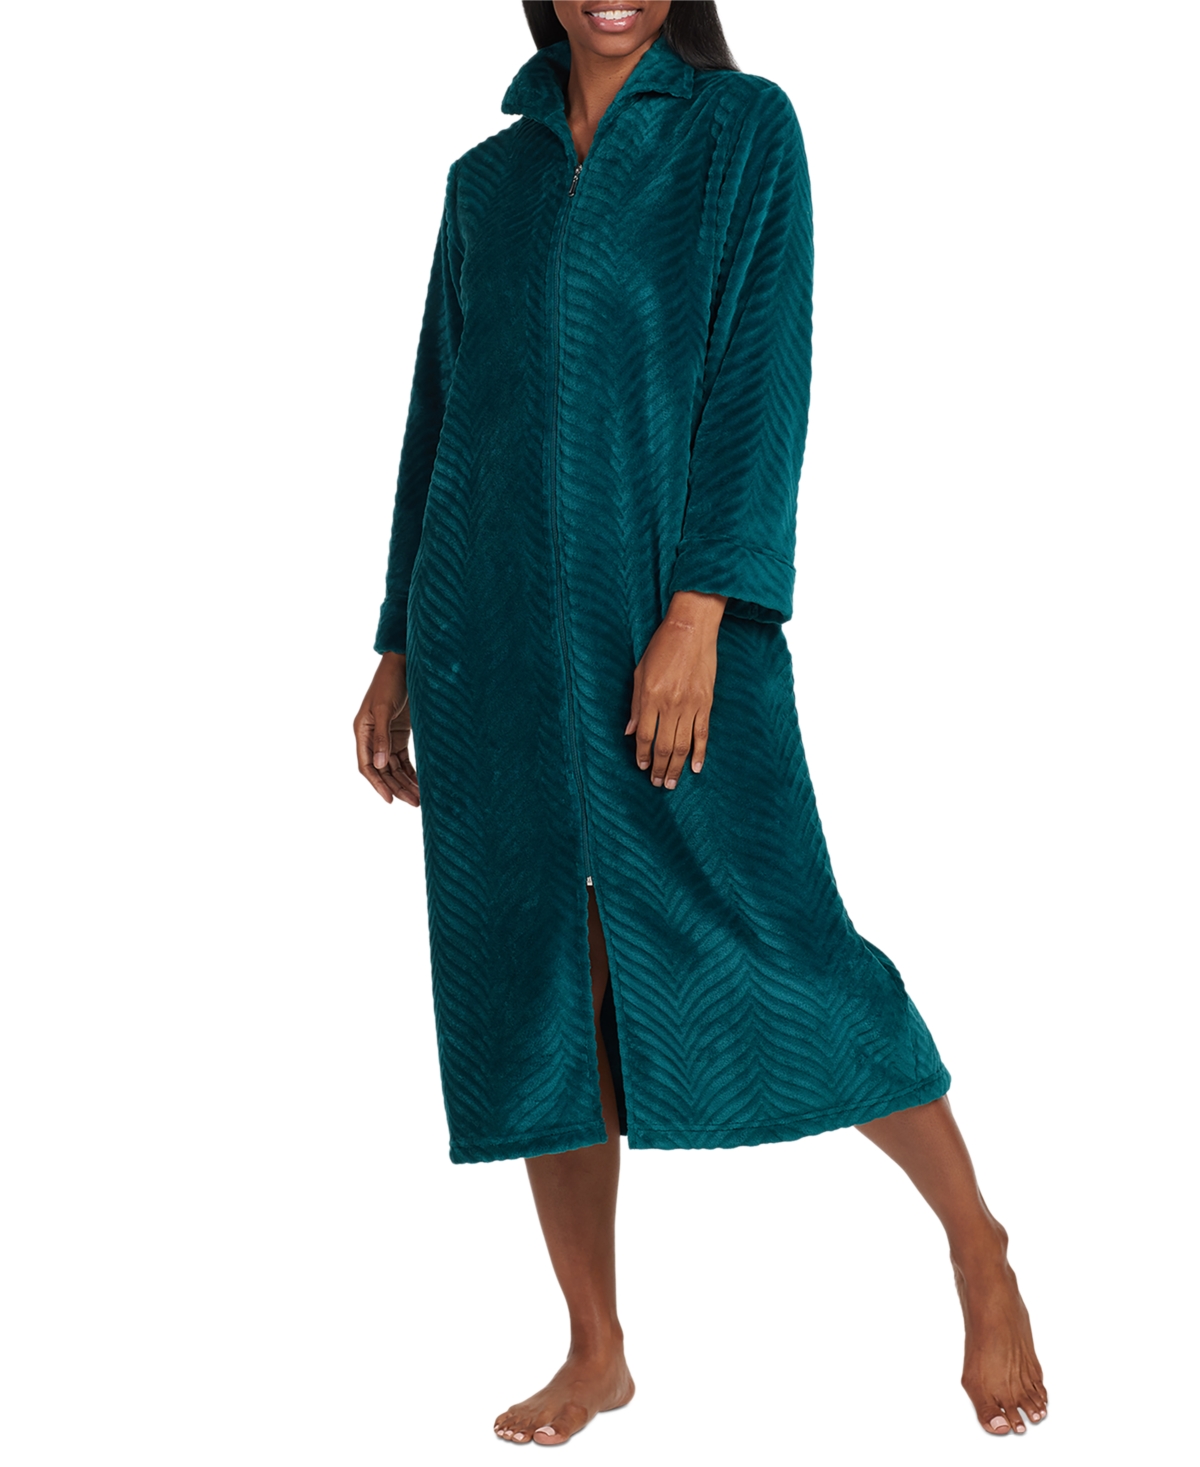 Women's Textured Zip-Front Robe - Emerald